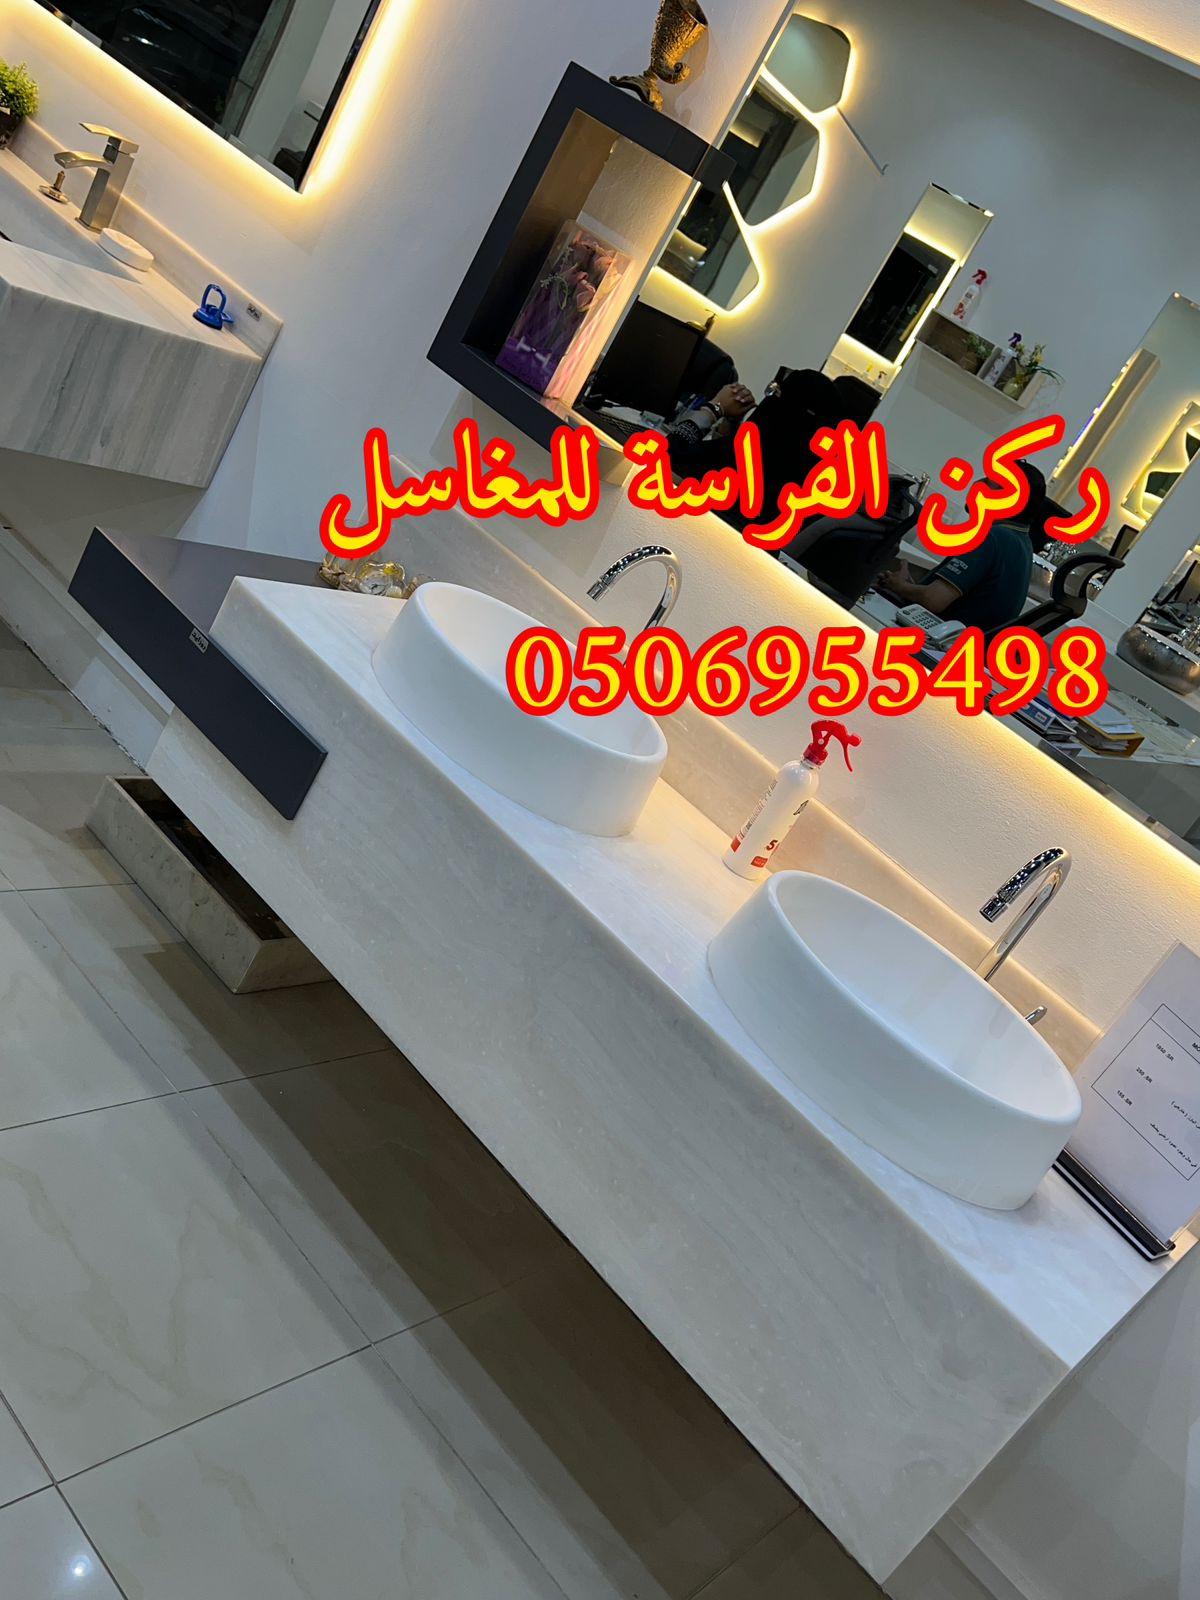 اشكال مغاسل رخام حديثة في الرياض,0506955498 417722765